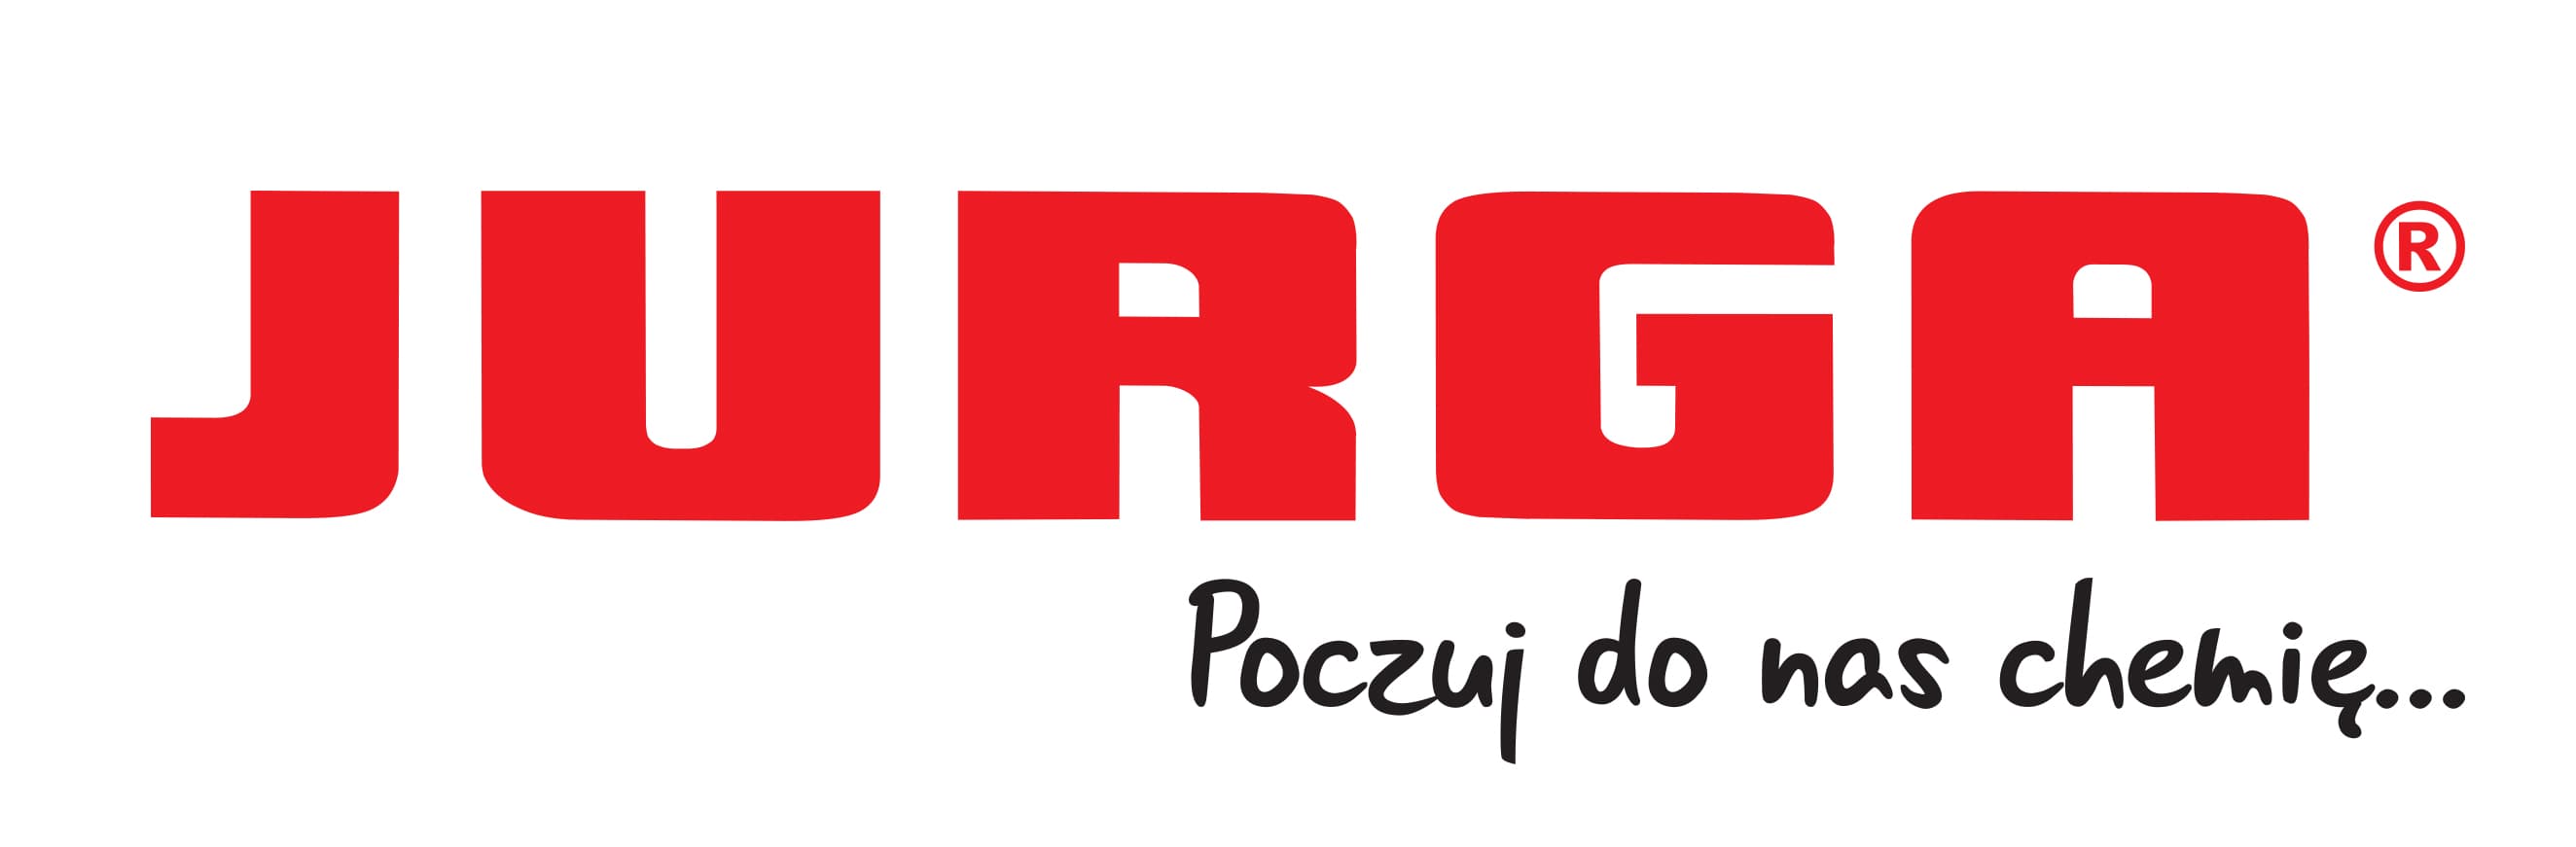 jurga logo